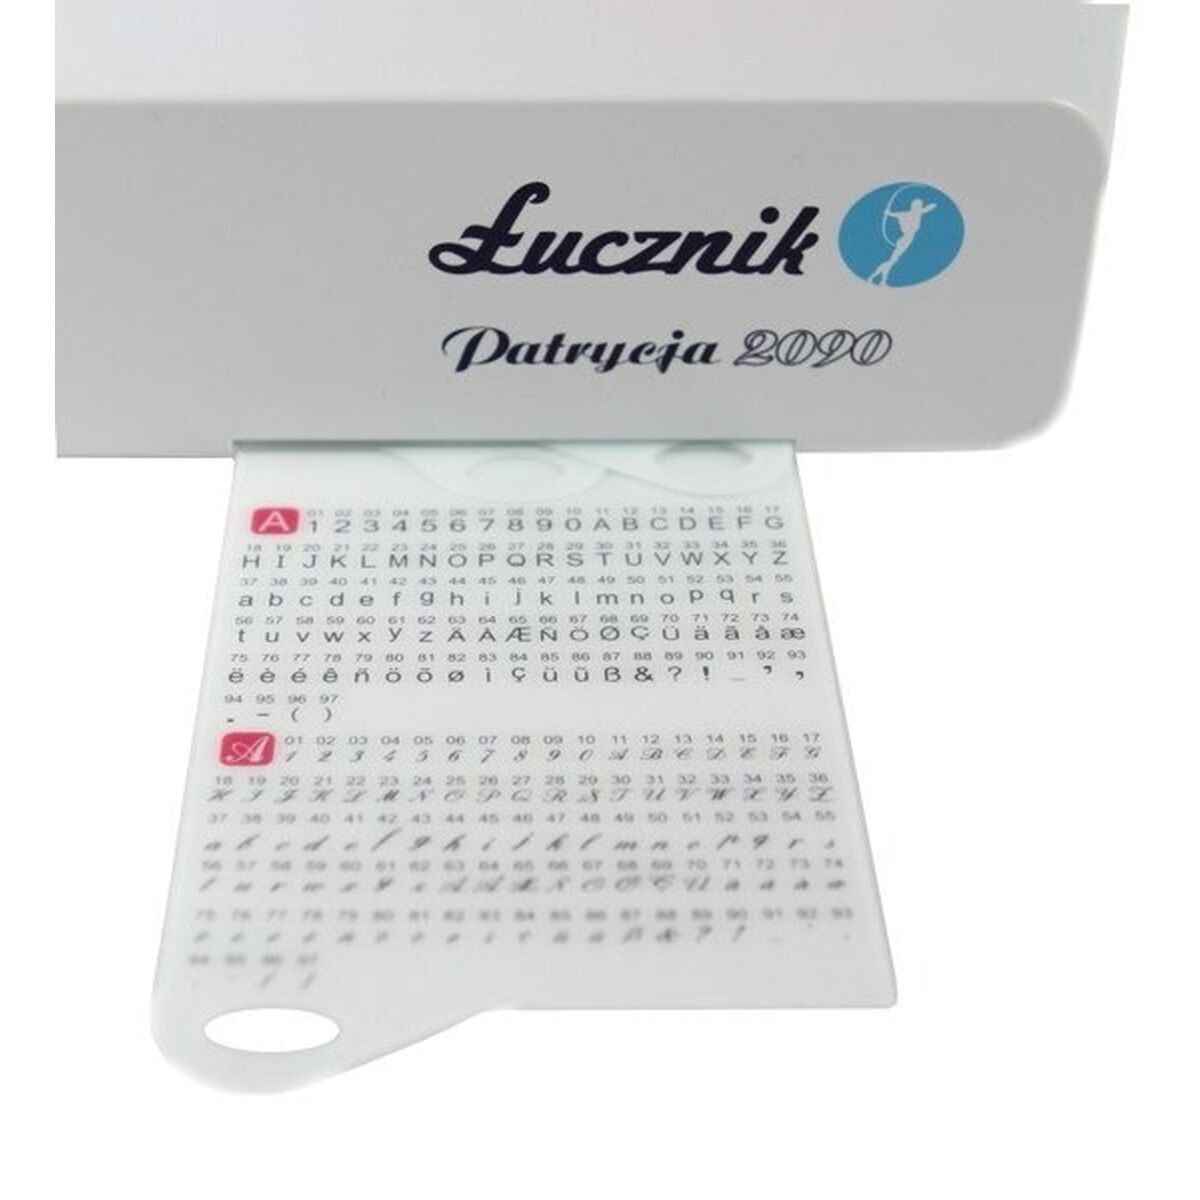 Швейная машина Łucznik Patrycja 2090